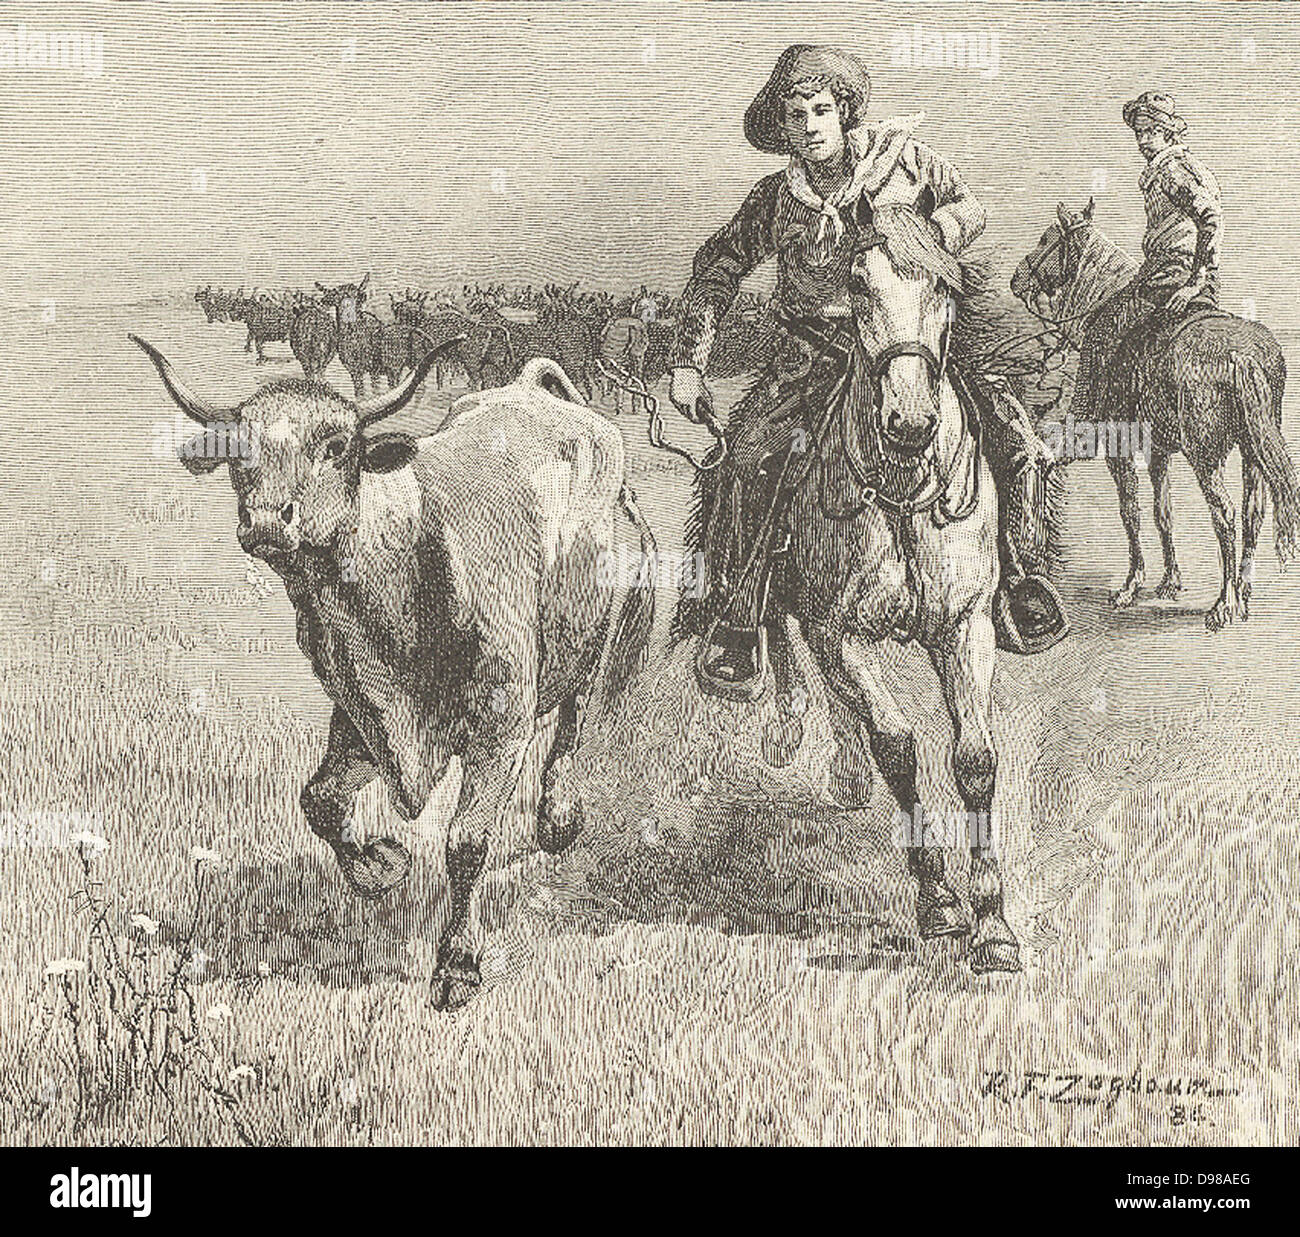 Cowboy geht nach einem Steer, die die Herde, während ein Almabtrieb verlassen hat: Montana. Kupferstich, 1885. Stockfoto